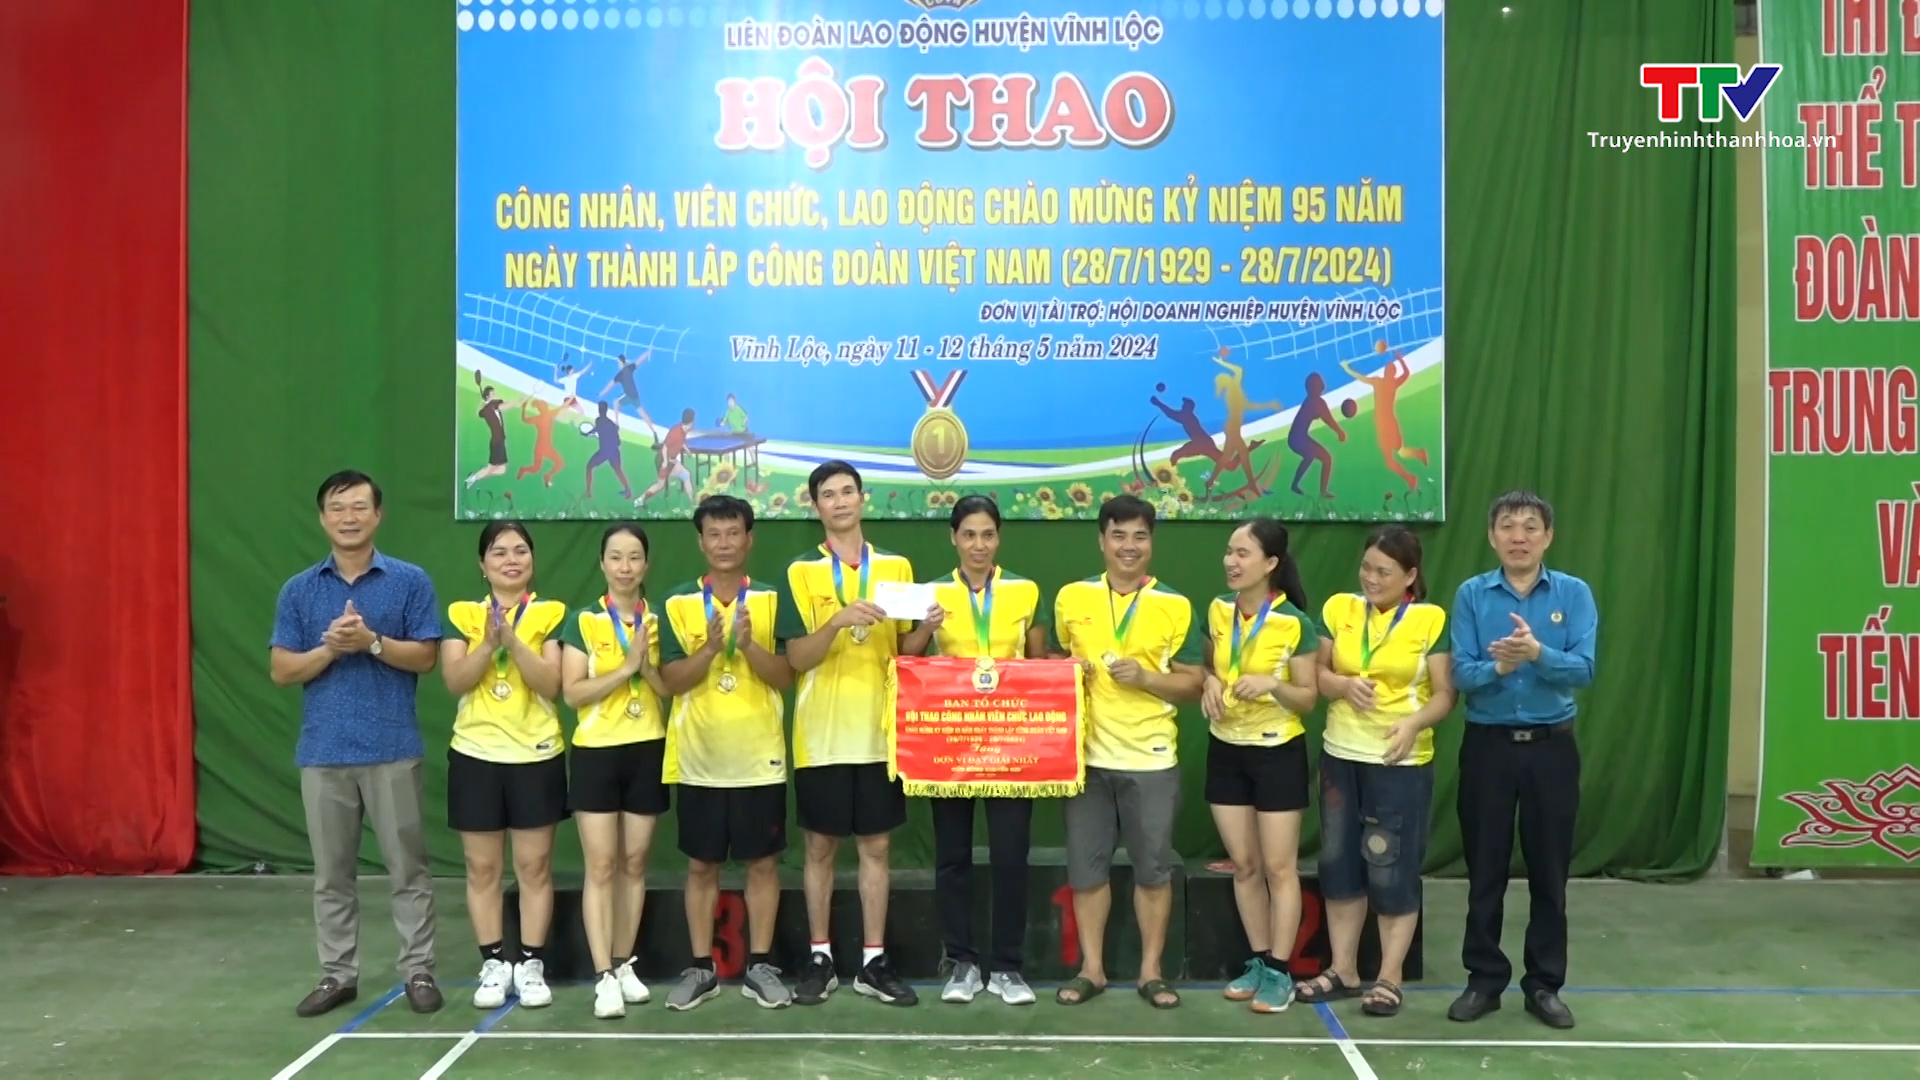 Huyện Vĩnh Lộc tổ chức Hội thao công nhân viên chức lao động- Ảnh 2.